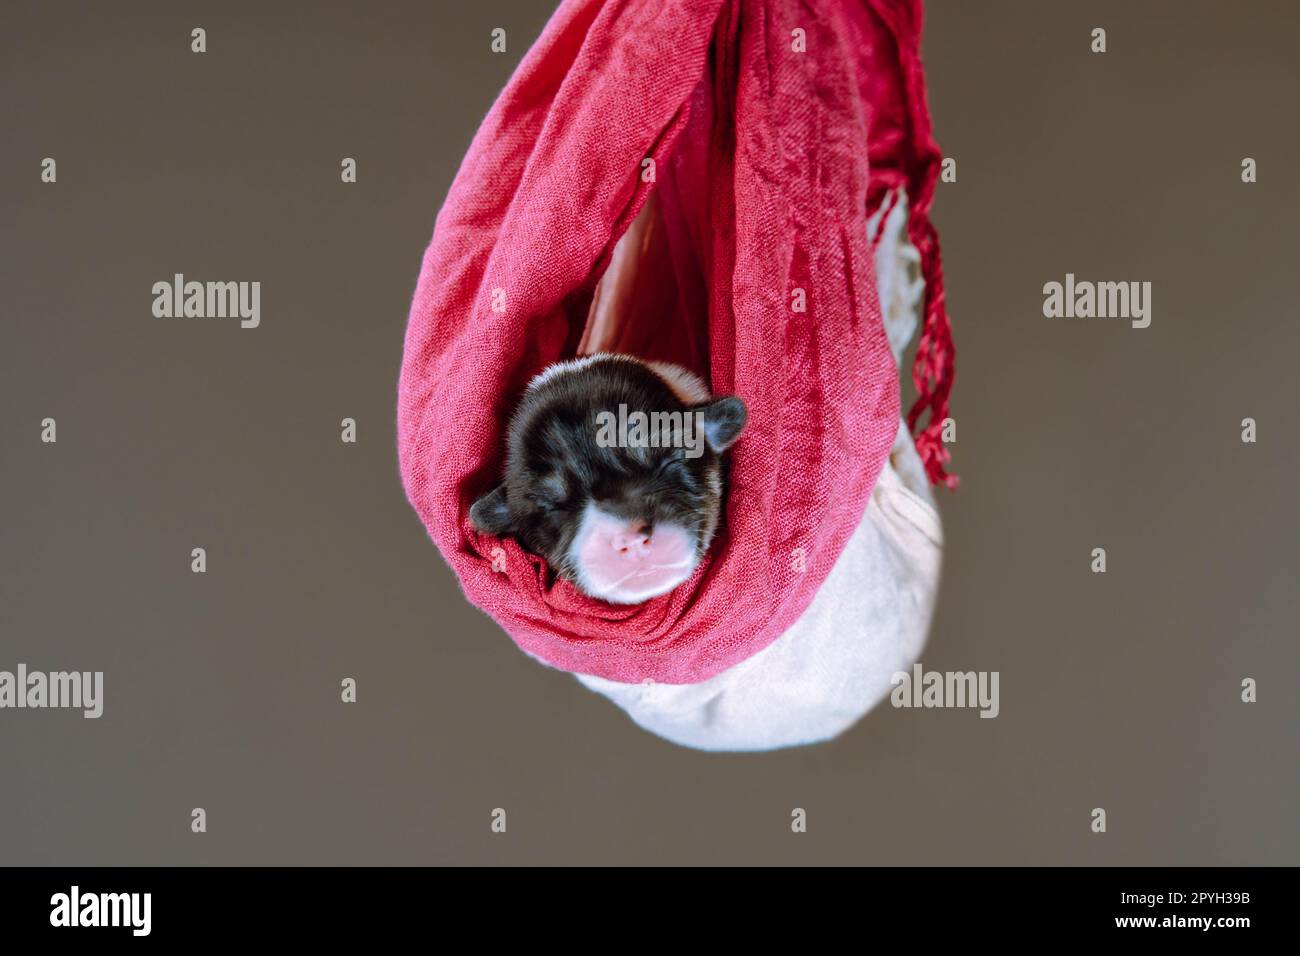 Portrait de chiot de deux mois de chien pembroke welsh corgi dormant sur des pulls blancs roses colorés sur fond brun. Banque D'Images